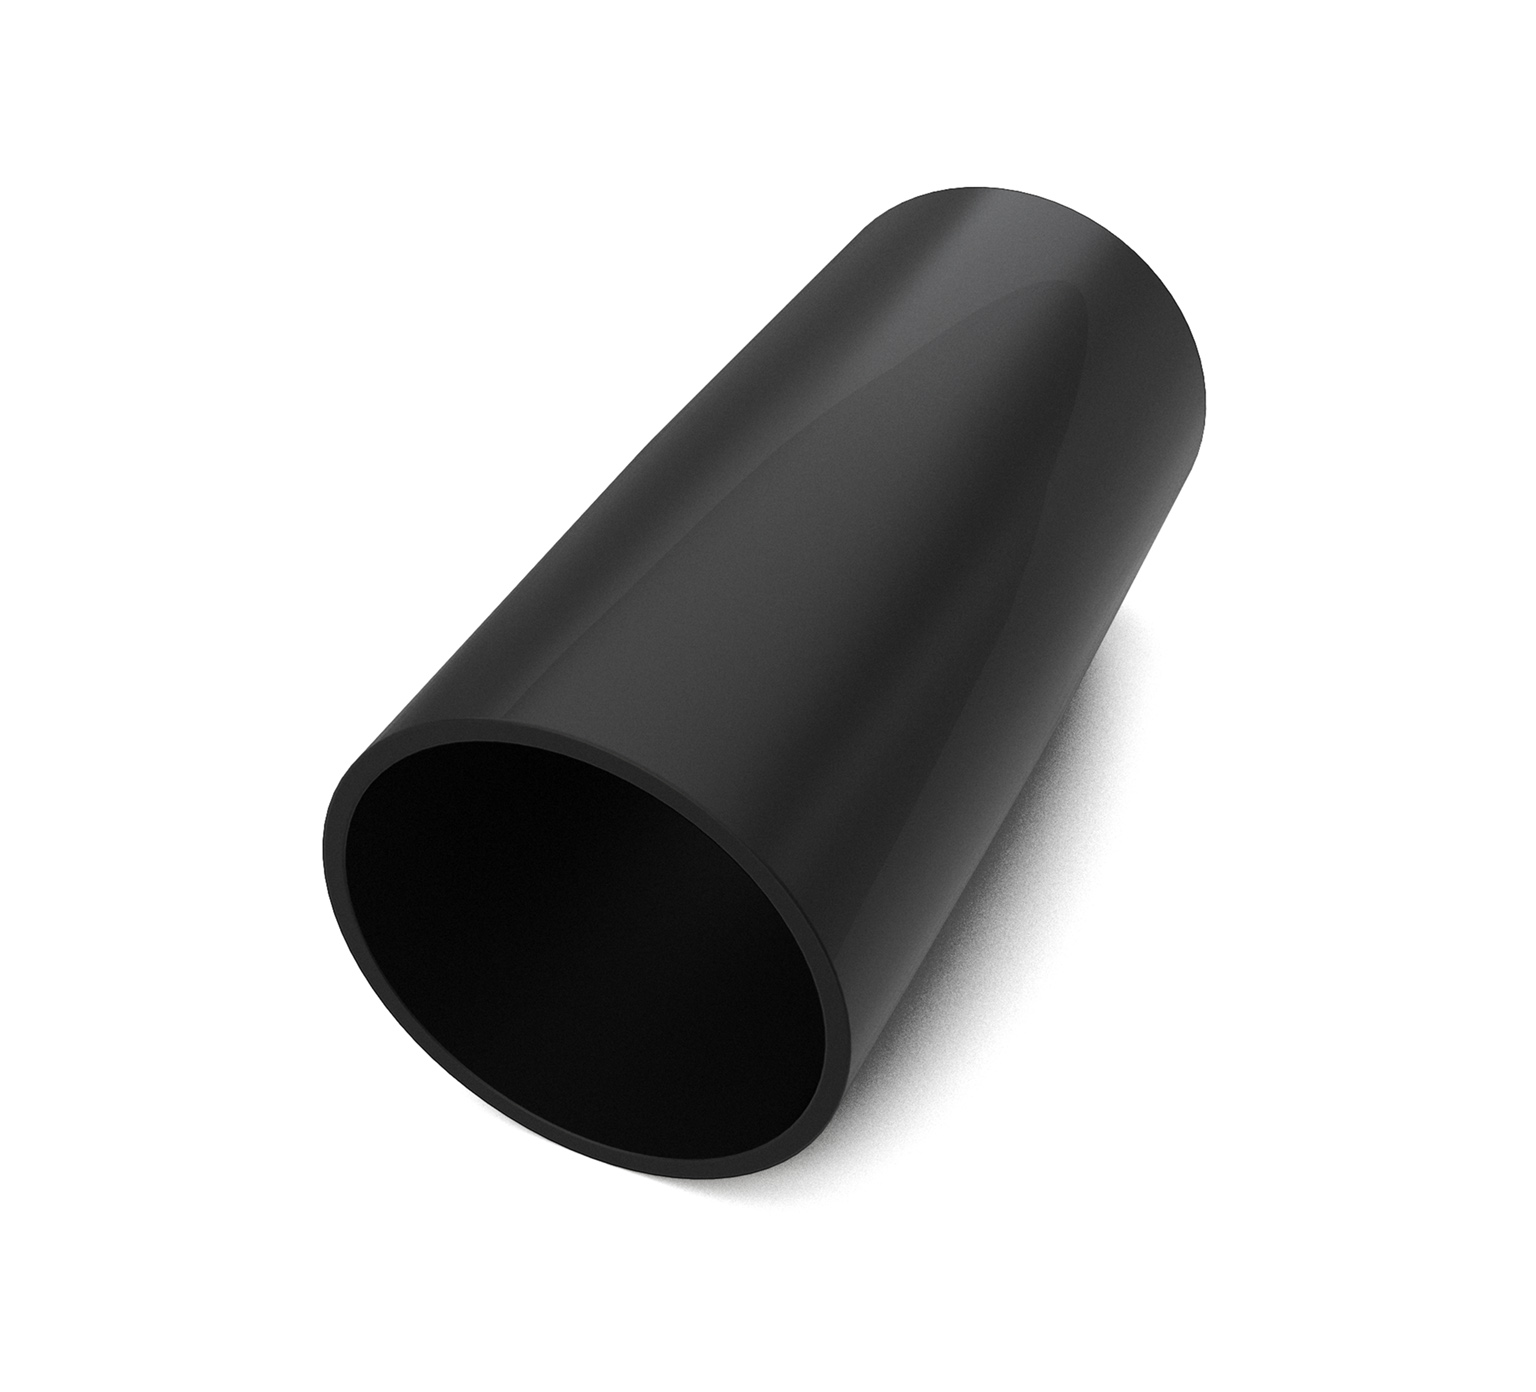 160471 Manchette de tuyau en PVC noir - 1,6 (diam. int.) x 1,5 (diam. int.) x 3,63 po / 4,06 x 3,81 x 9,22 cm alt 1